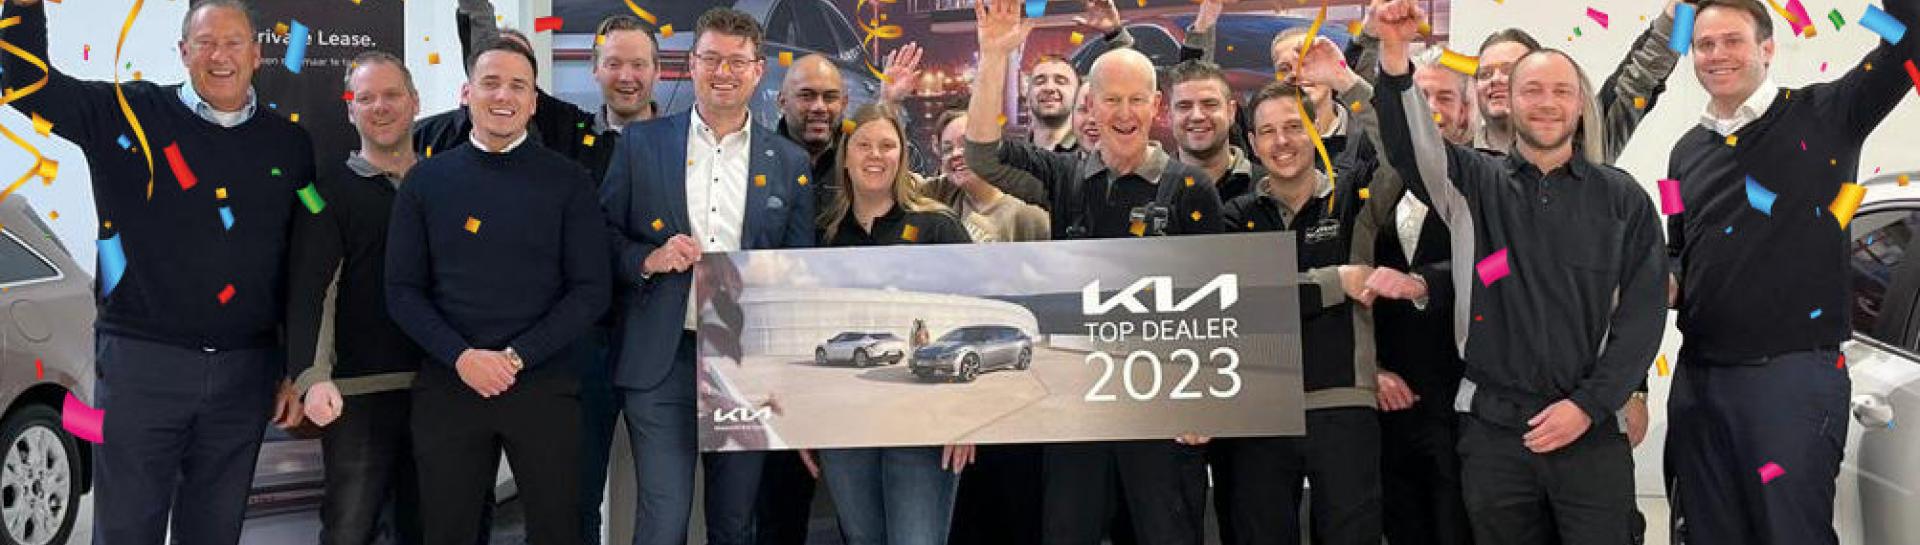 Content Autogroep bekroond met Kia Top Dealer Award 2023